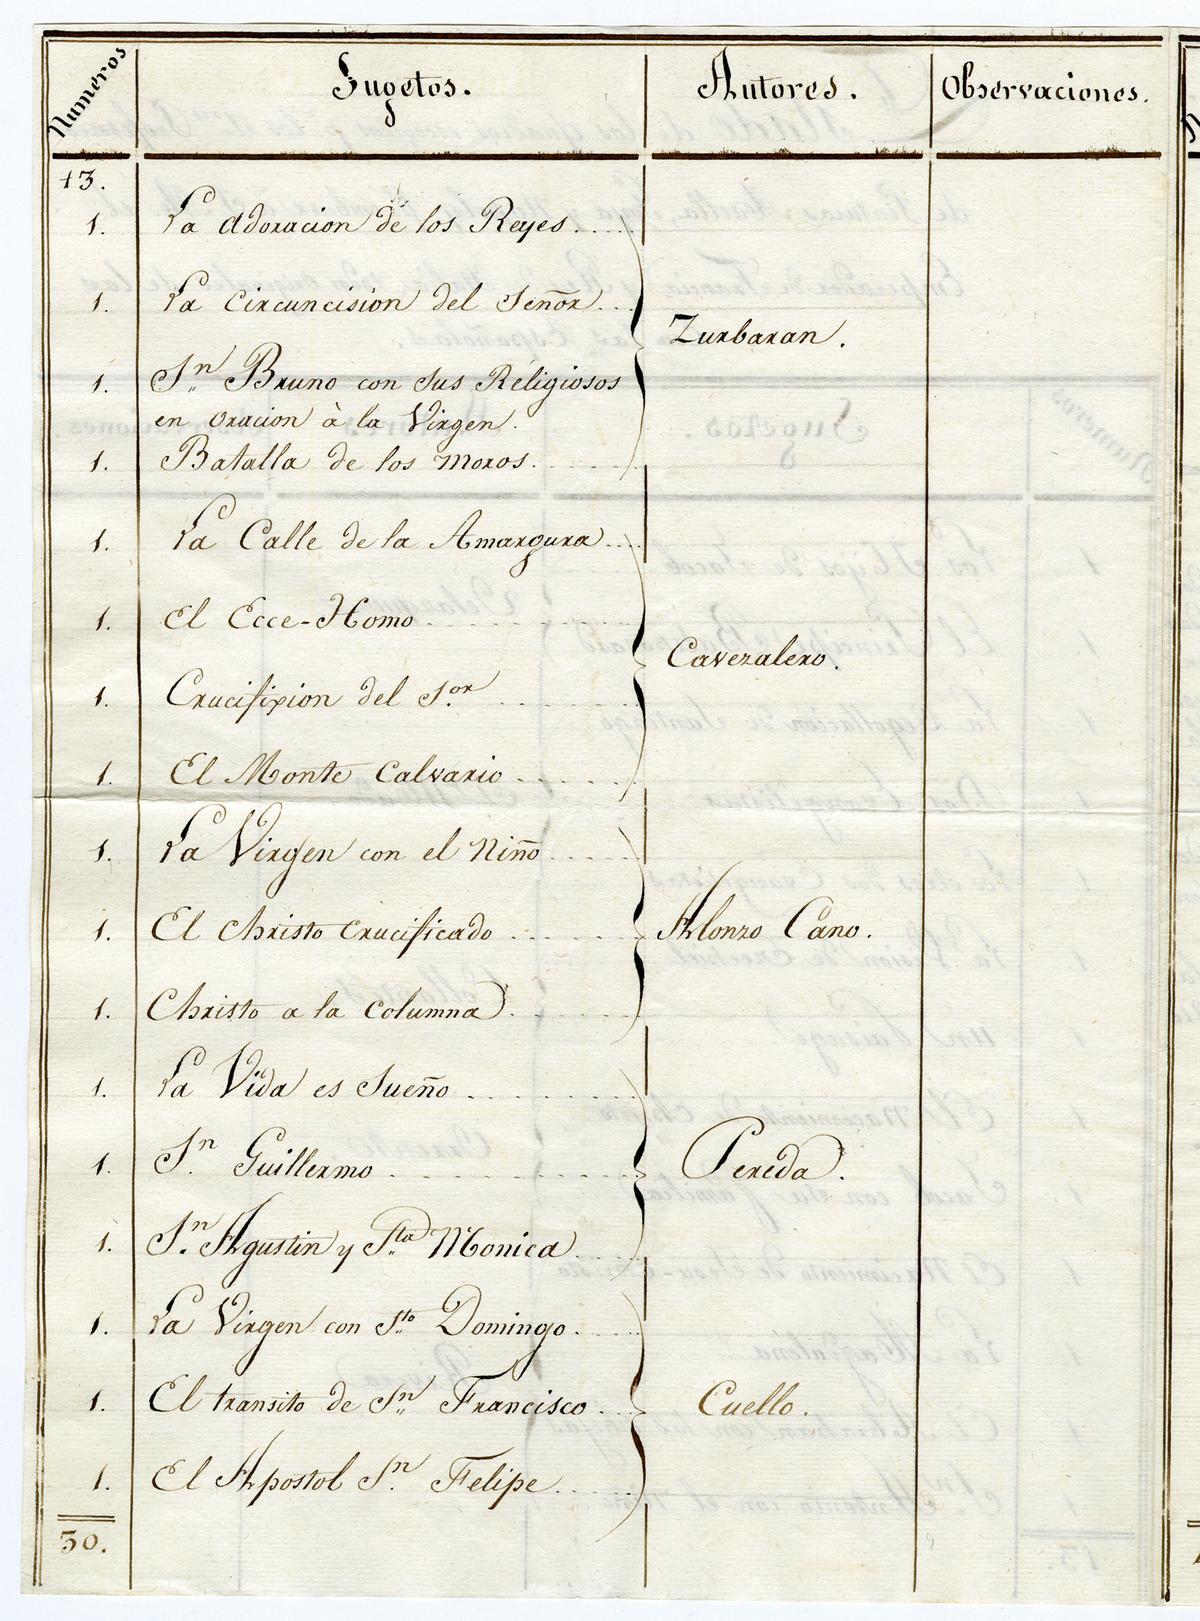 Listado de obras escogidas por Maella, Goya y Napoli.